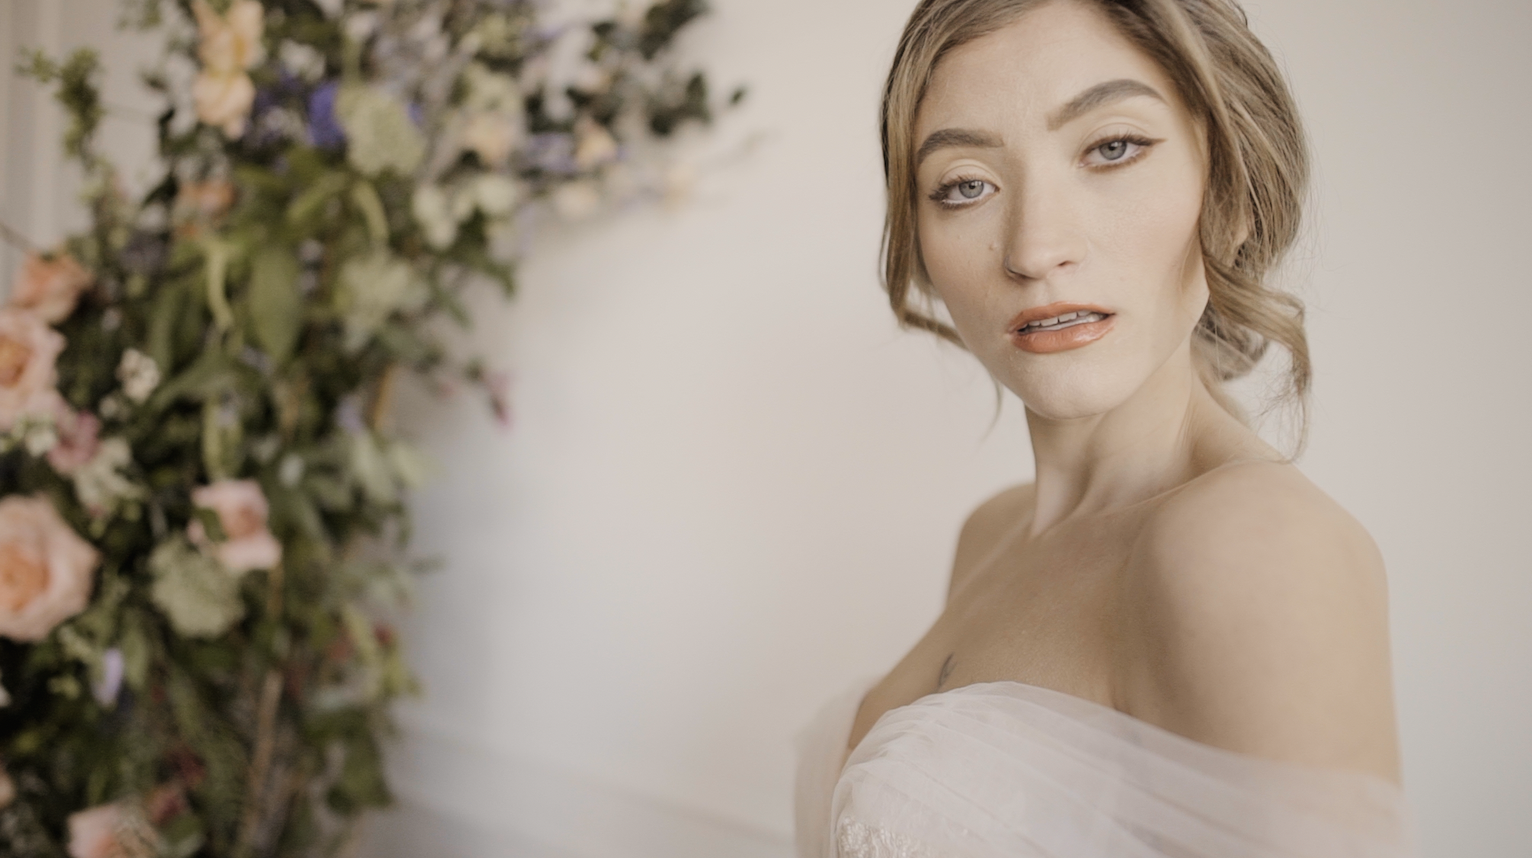 Dreamy Spring Bridal Session // Editorial Wedding Film